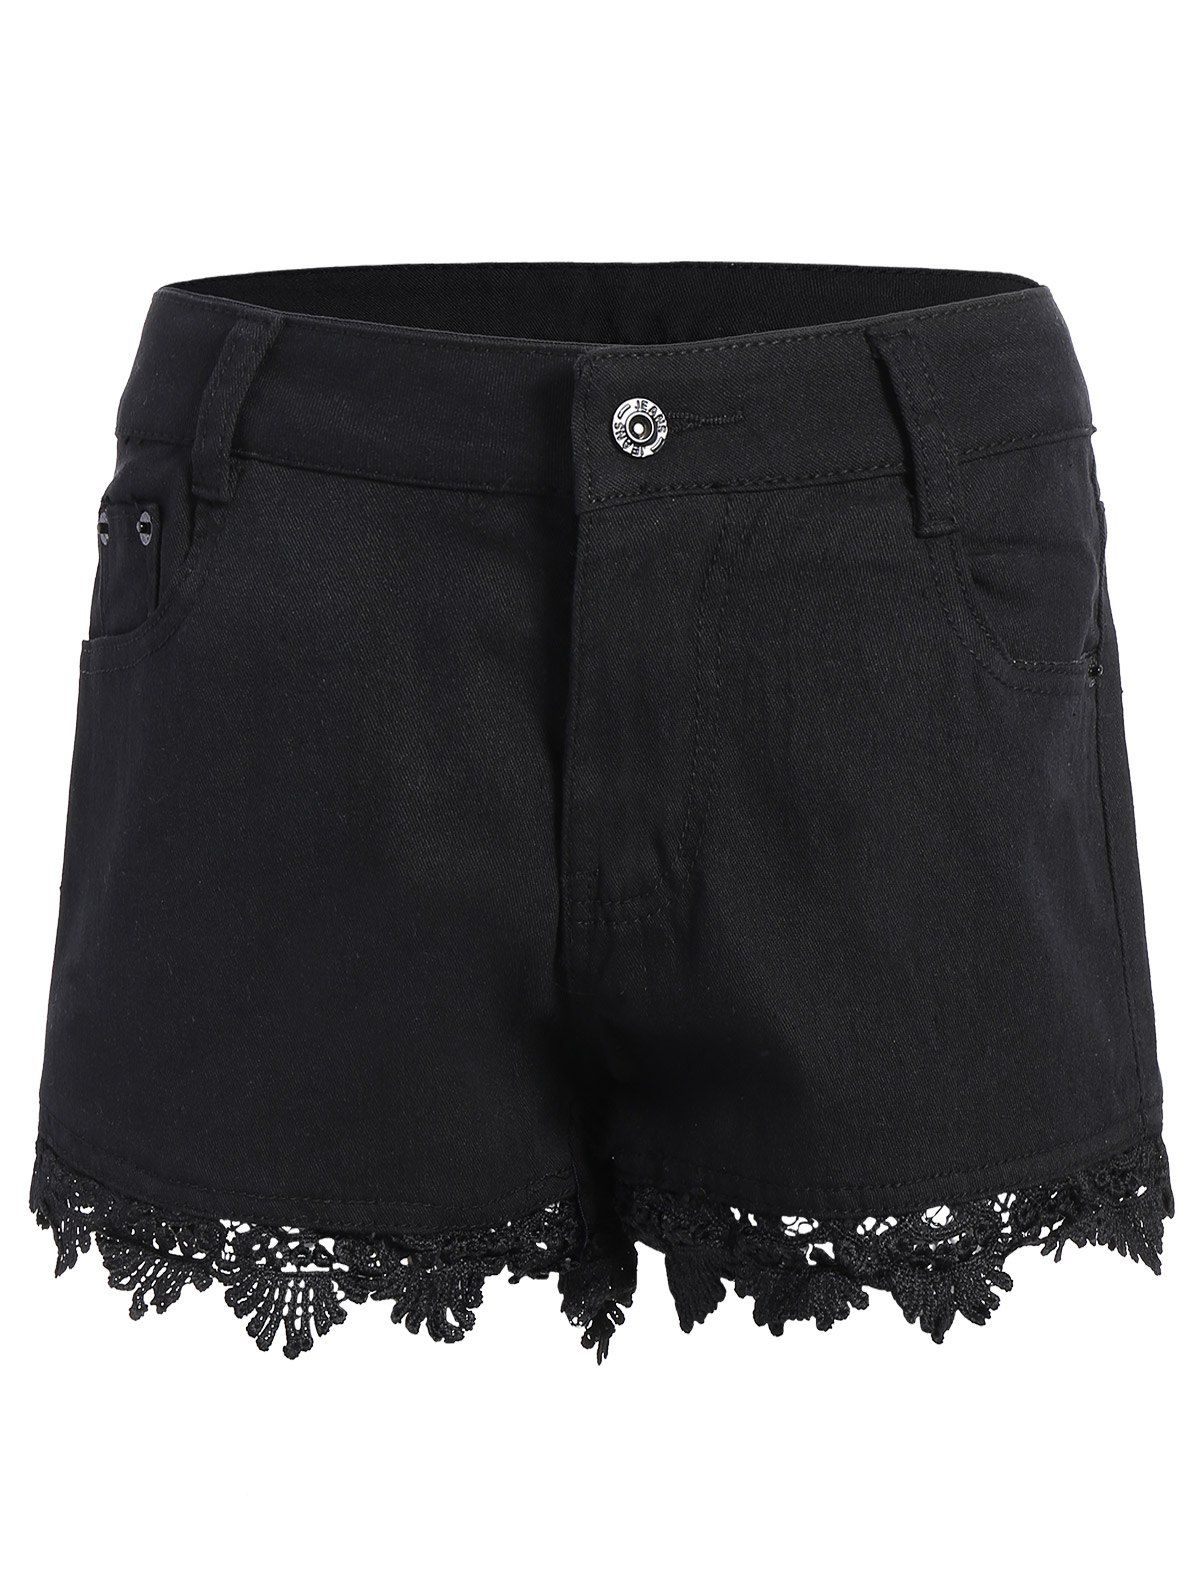 [21% OFF] Lace Trim Denim Shorts | Rosegal